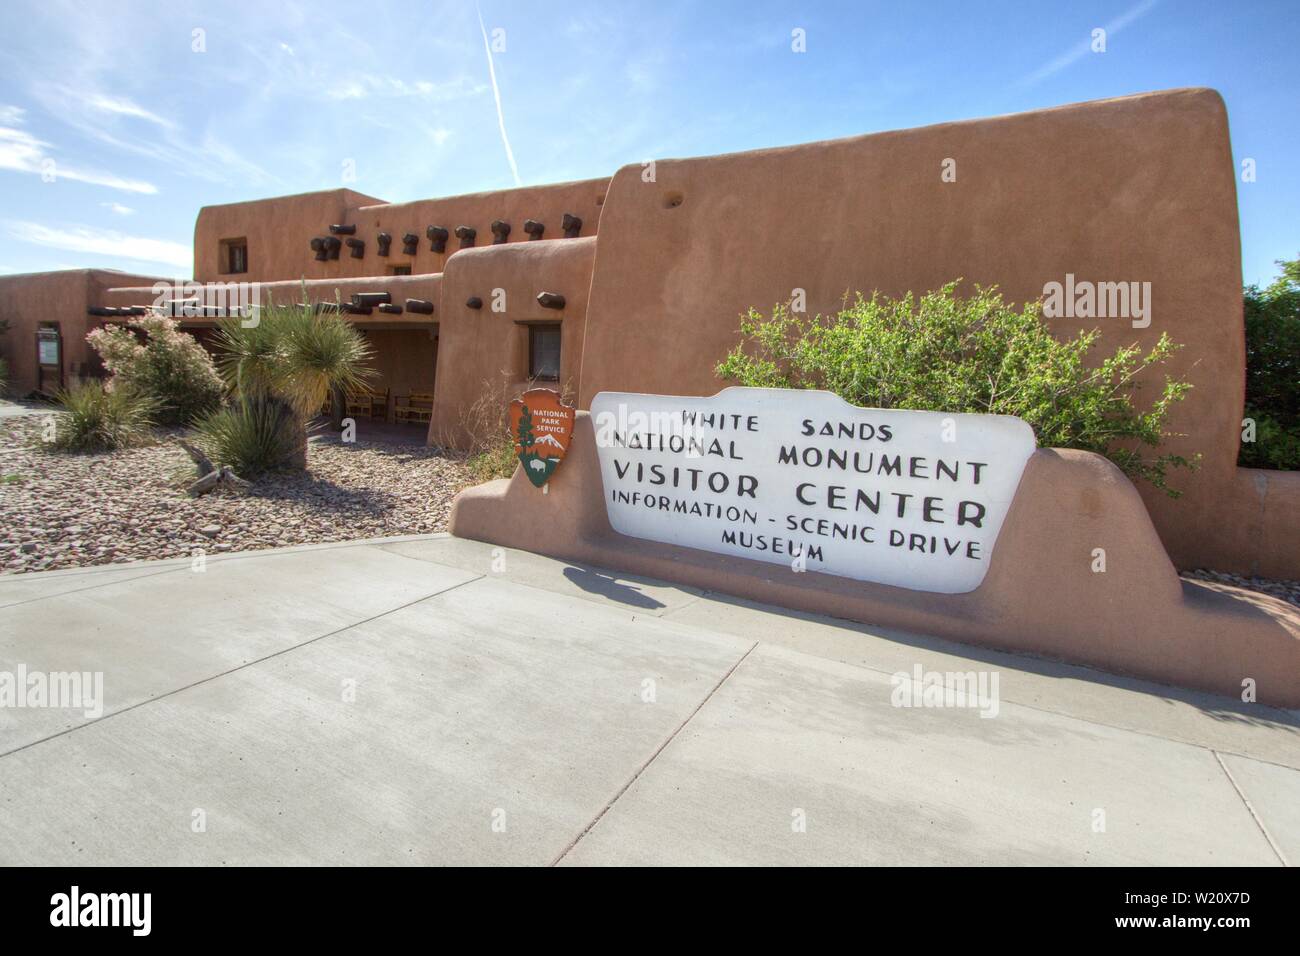 Alamogordo, Nuovo Messico, Stati Uniti d'America -: ingresso al White Sands National Monument Visitor Centre in New Mexico. Il parco dispone di gesso enormi dune di sabbia Foto Stock